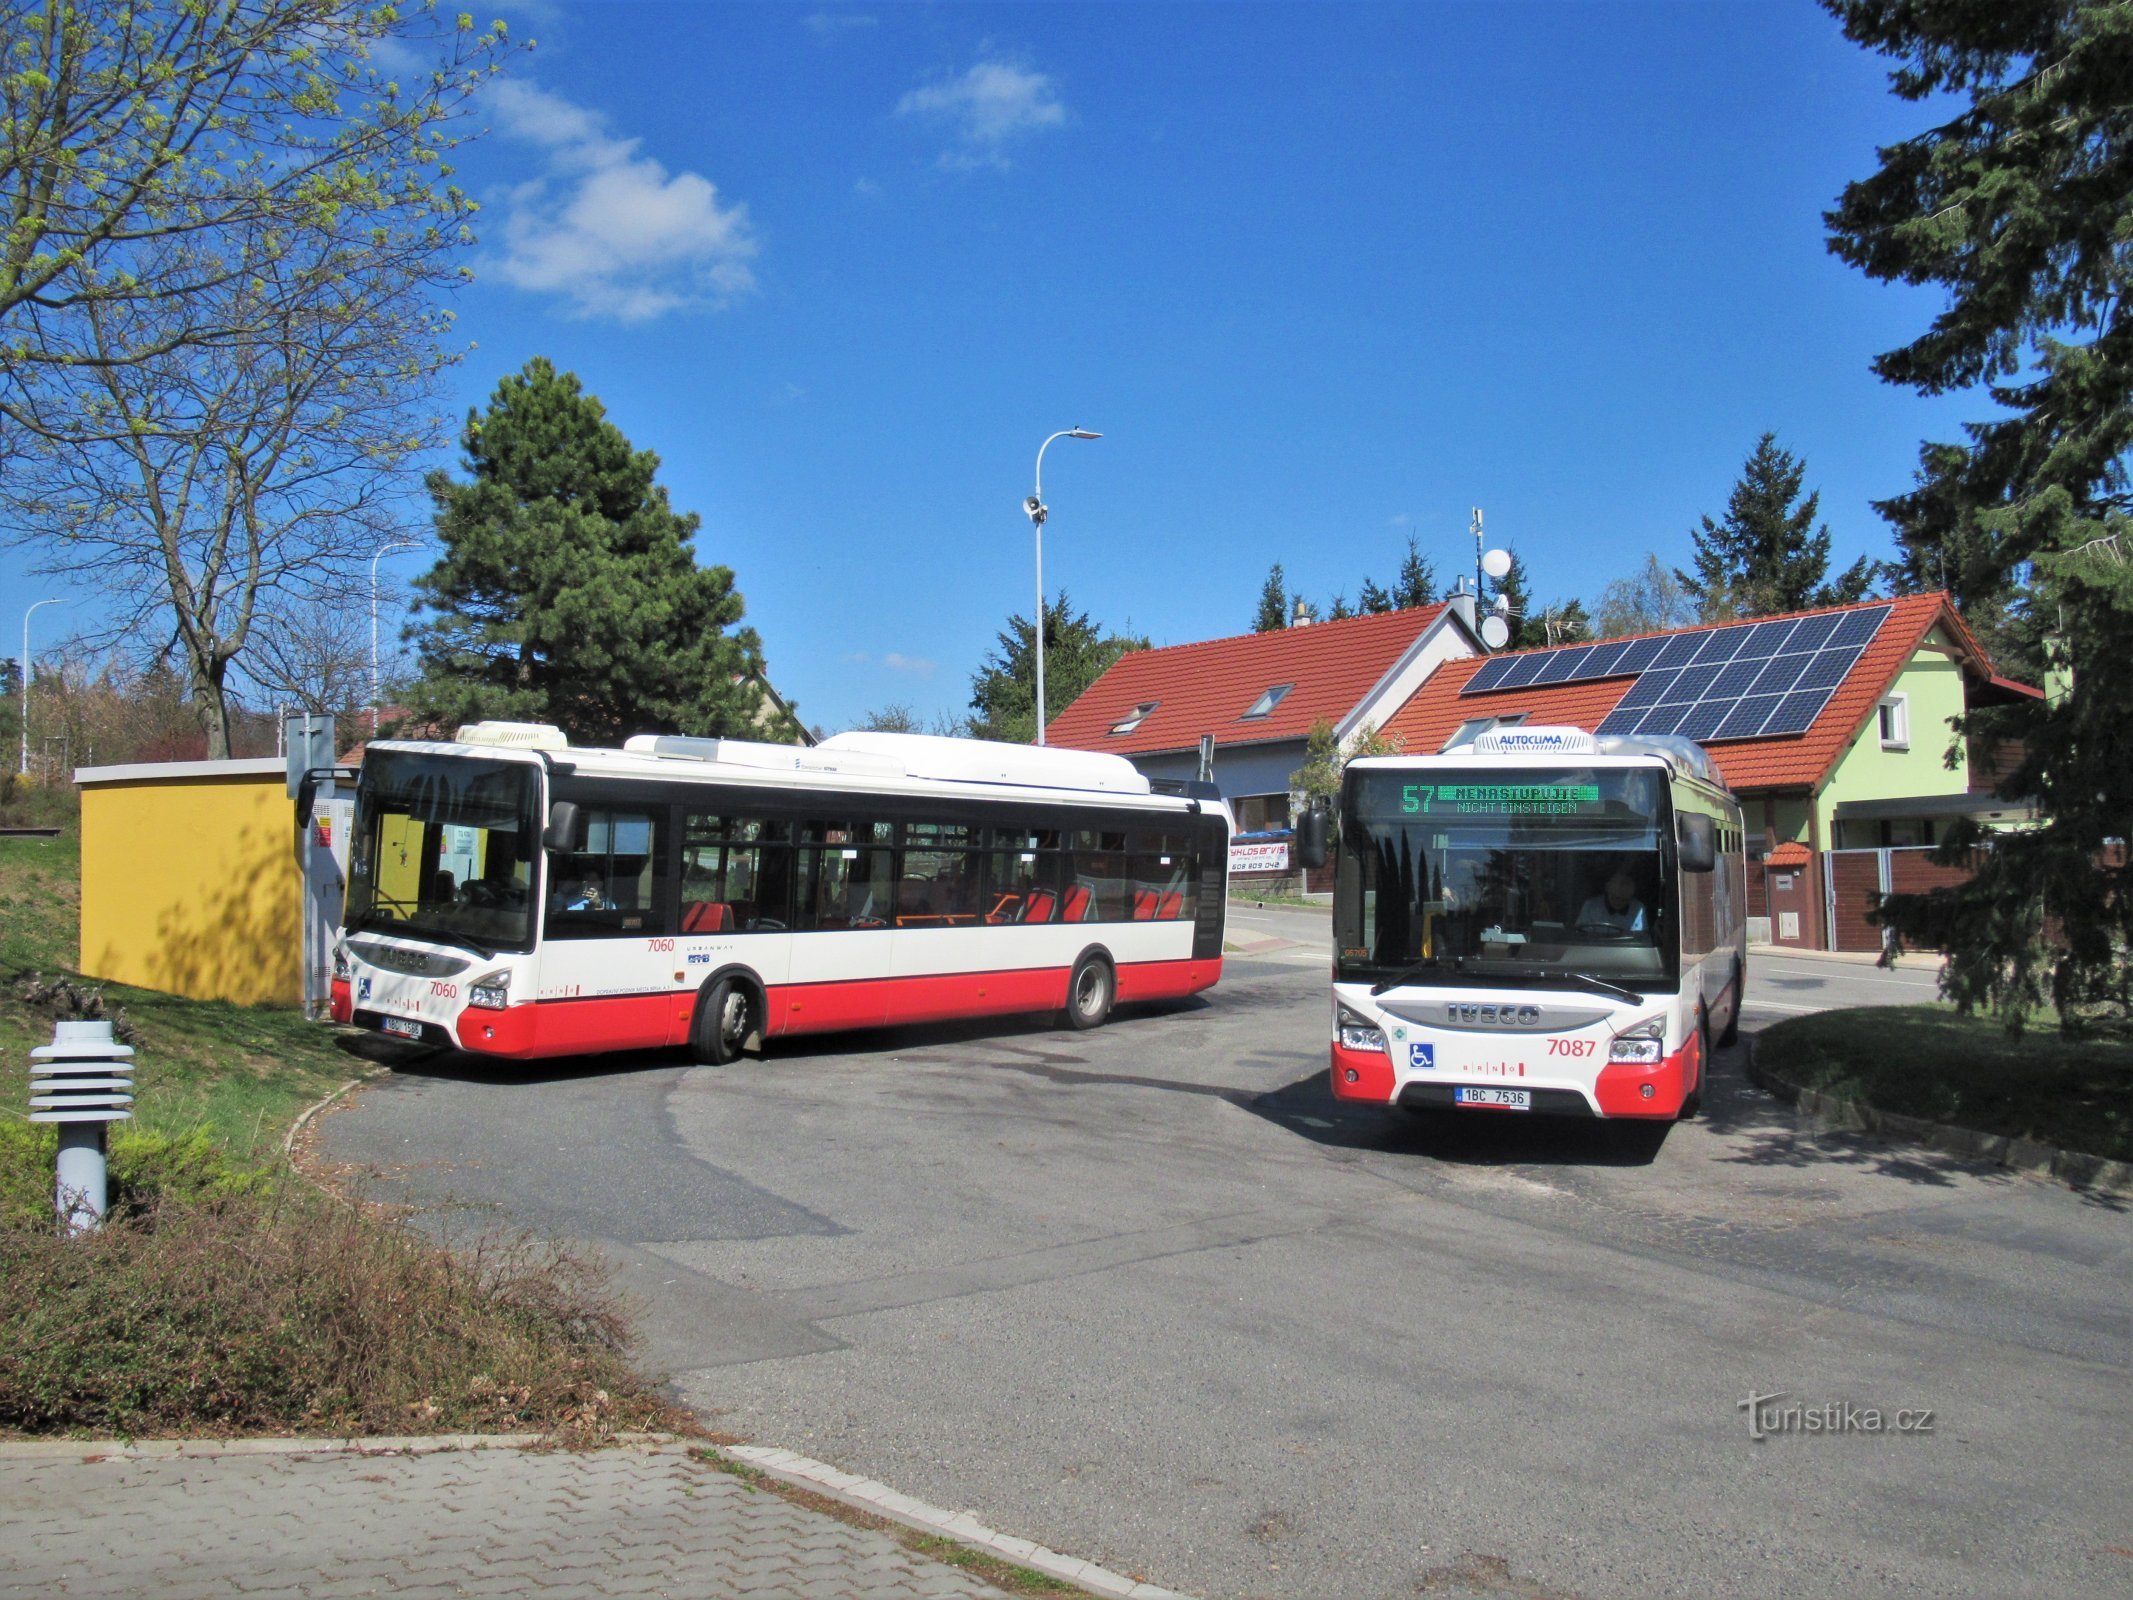 Terminal of bus no. 57 in Útěchov